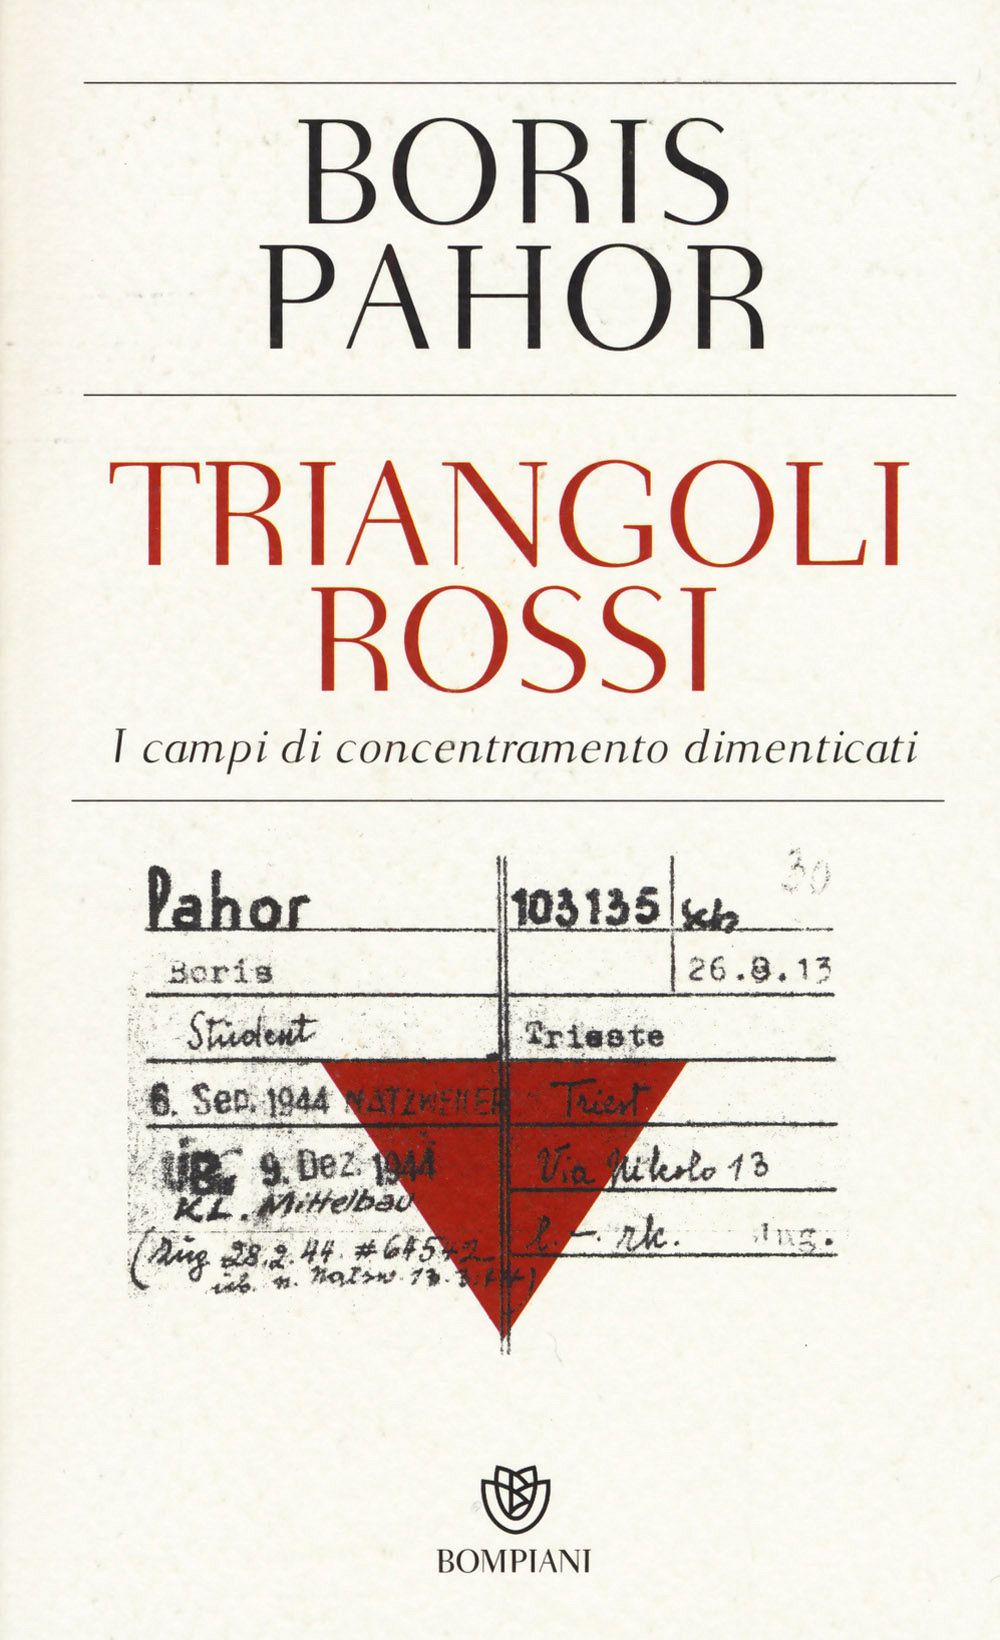 Triangoli rossi (publikacija v italijanskem jeziku)